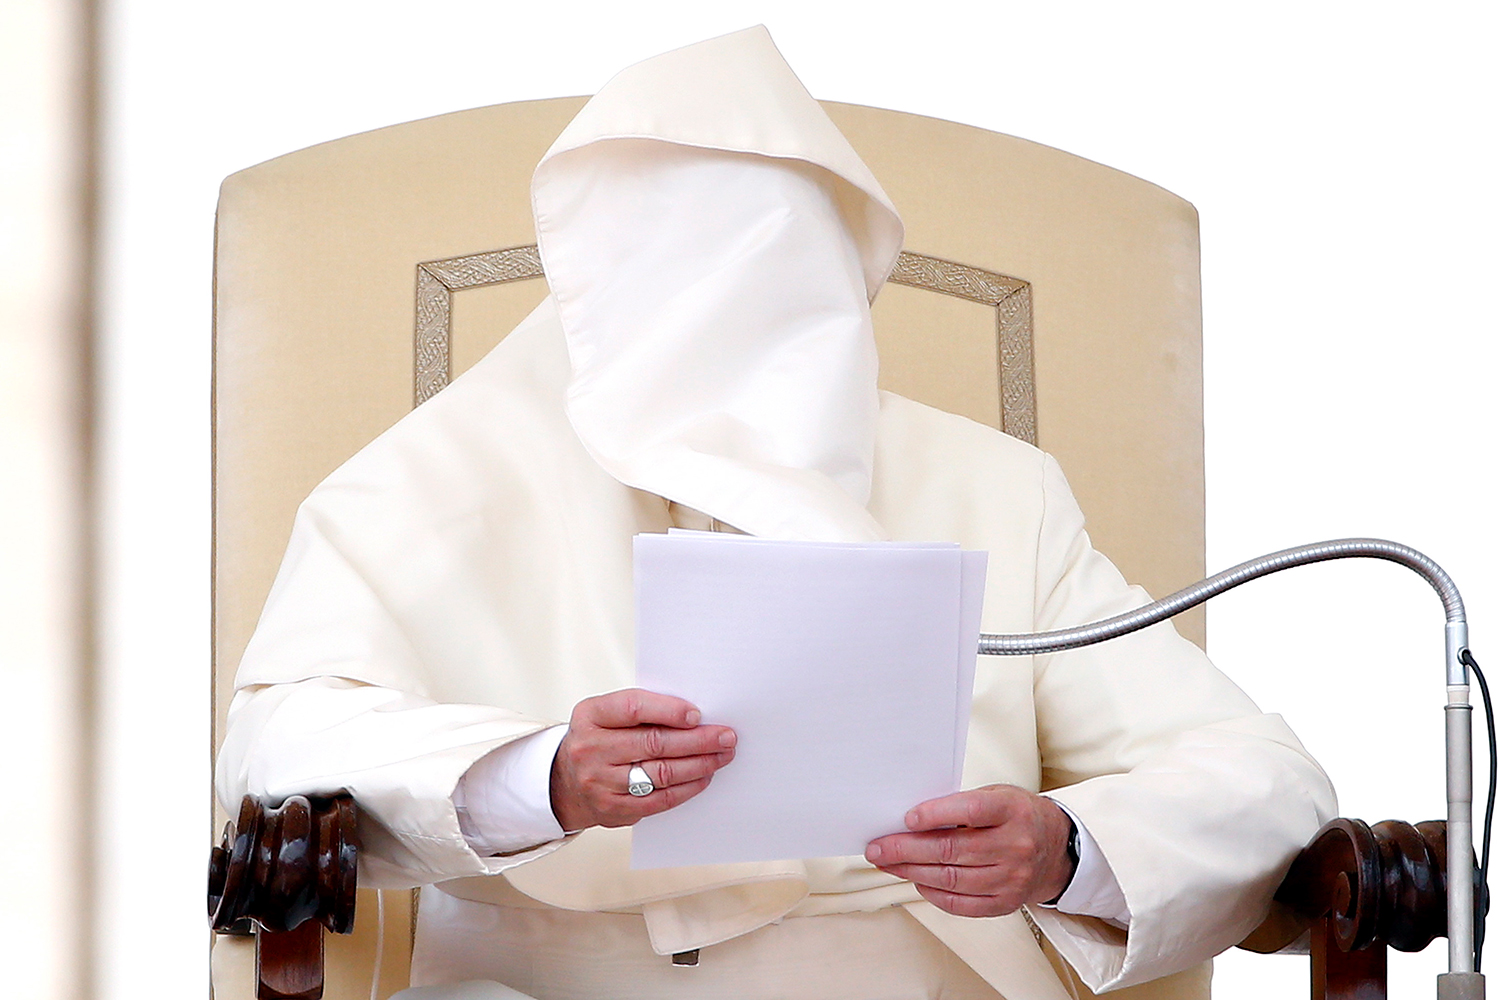 El servicio secreto cerca a terroristas que buscan atentar contra el Papa en EEUU. #7dias